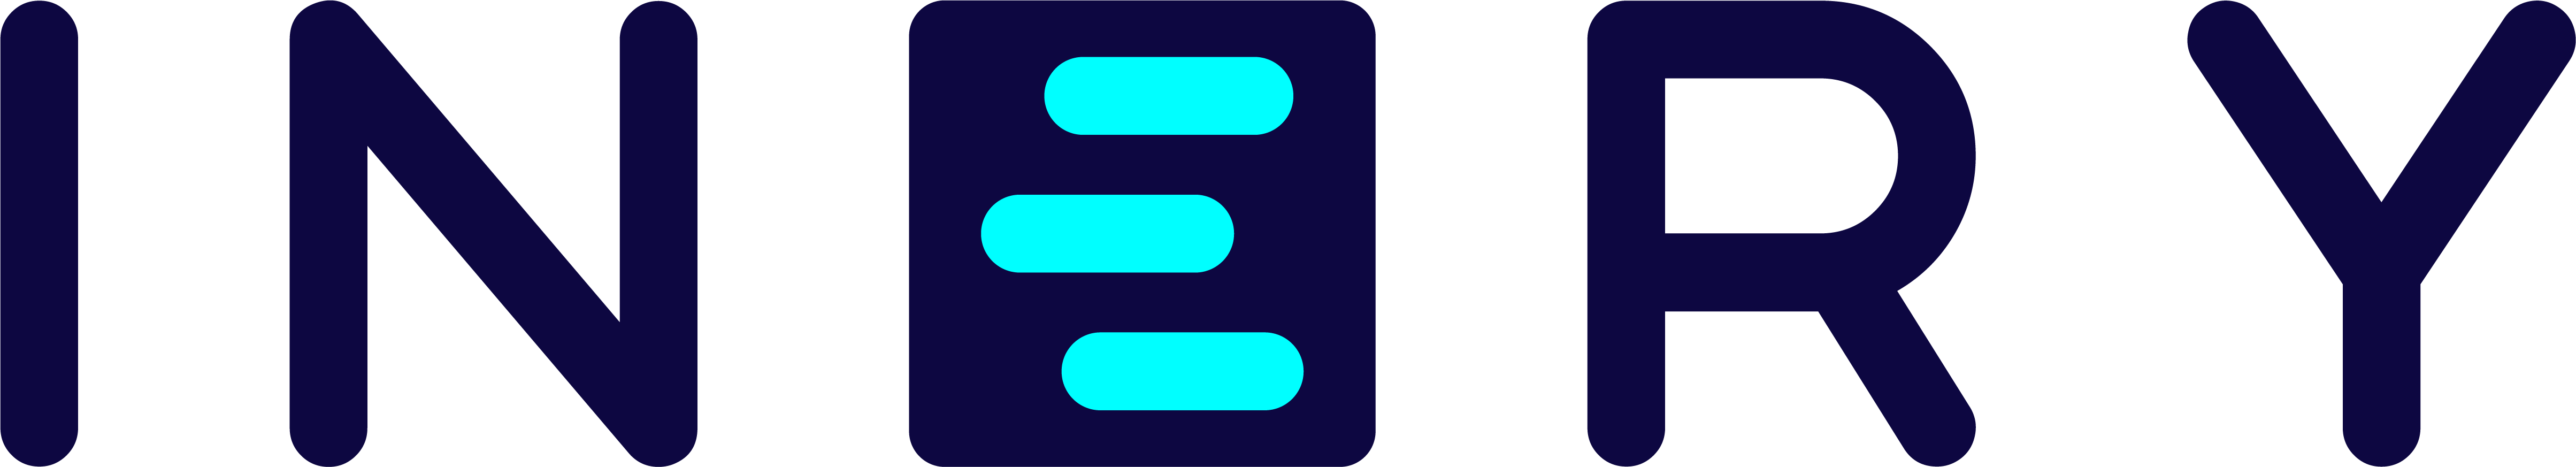 Inery_Main Logo1